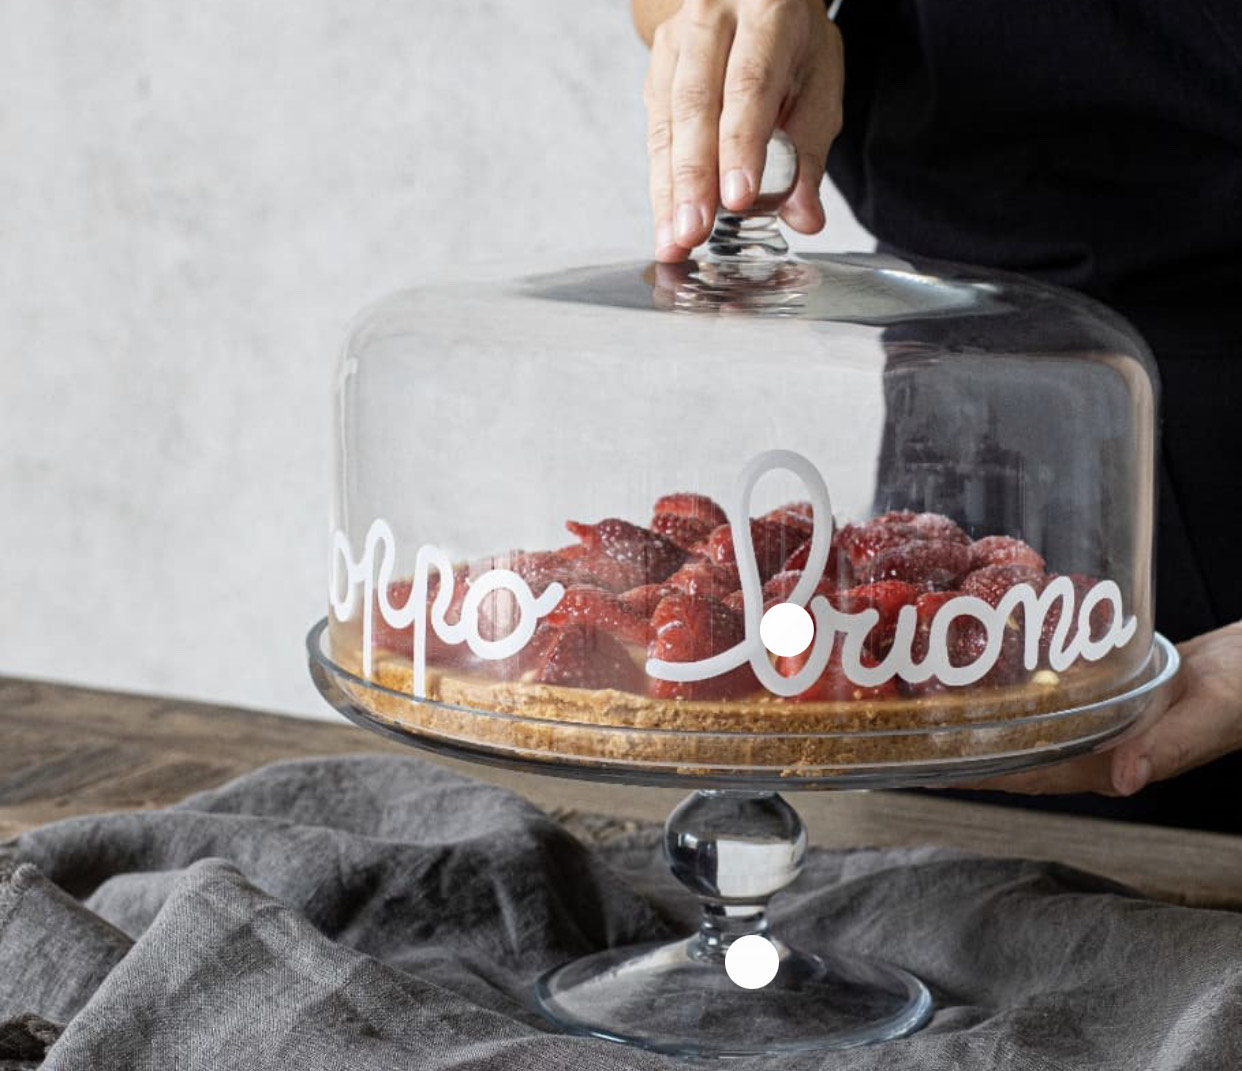 Campana per alzata torta vintage – La Mandorla – Tutto per la per  pasticceria